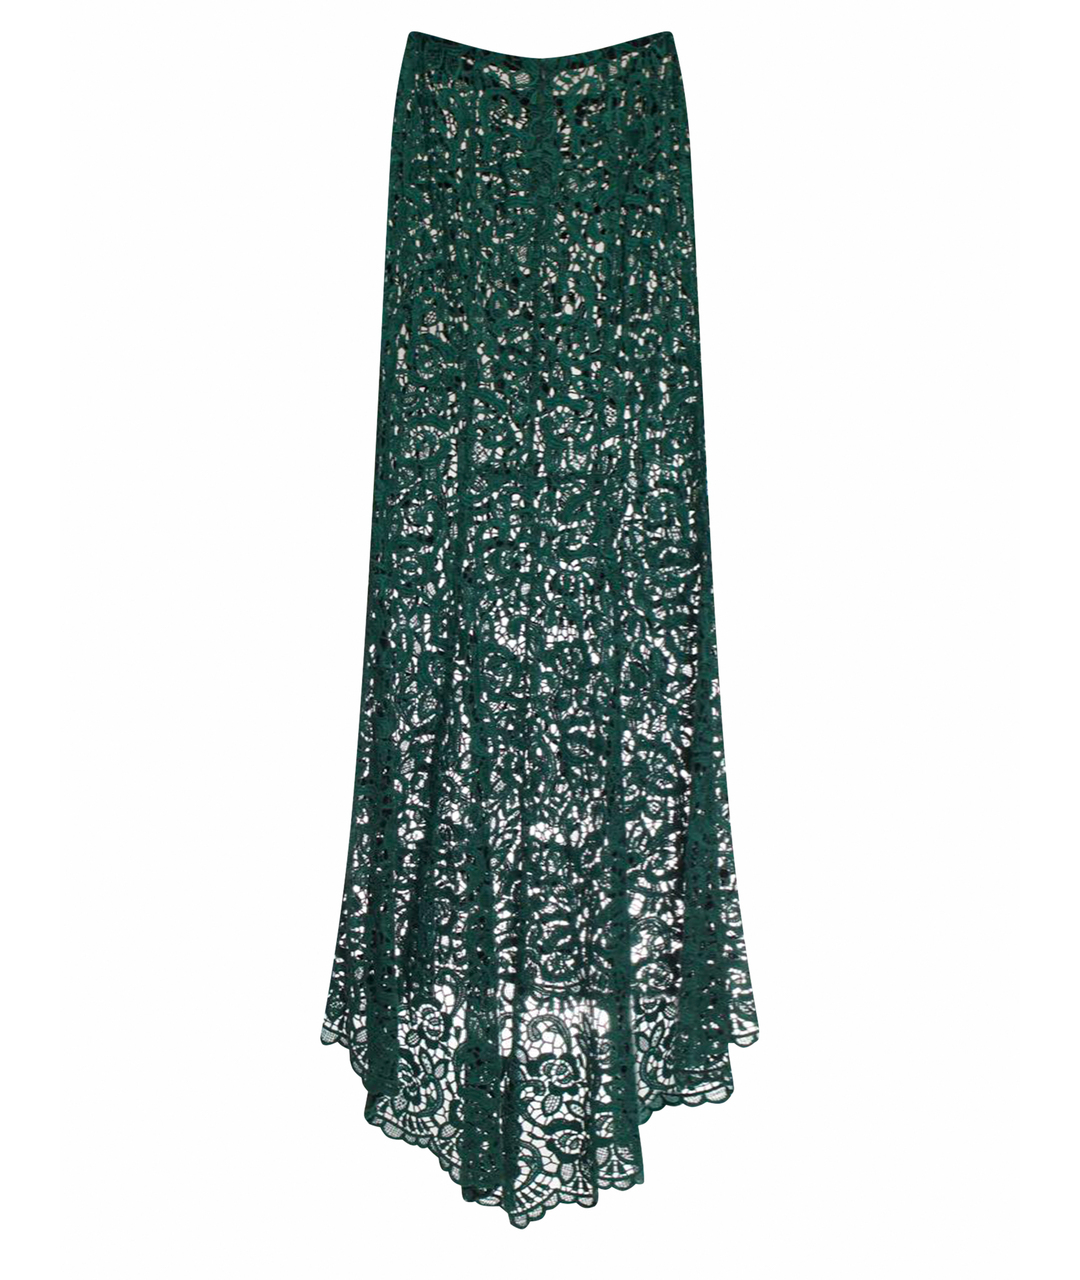 TZIPPORAH Зеленая юбка миди, фото 1